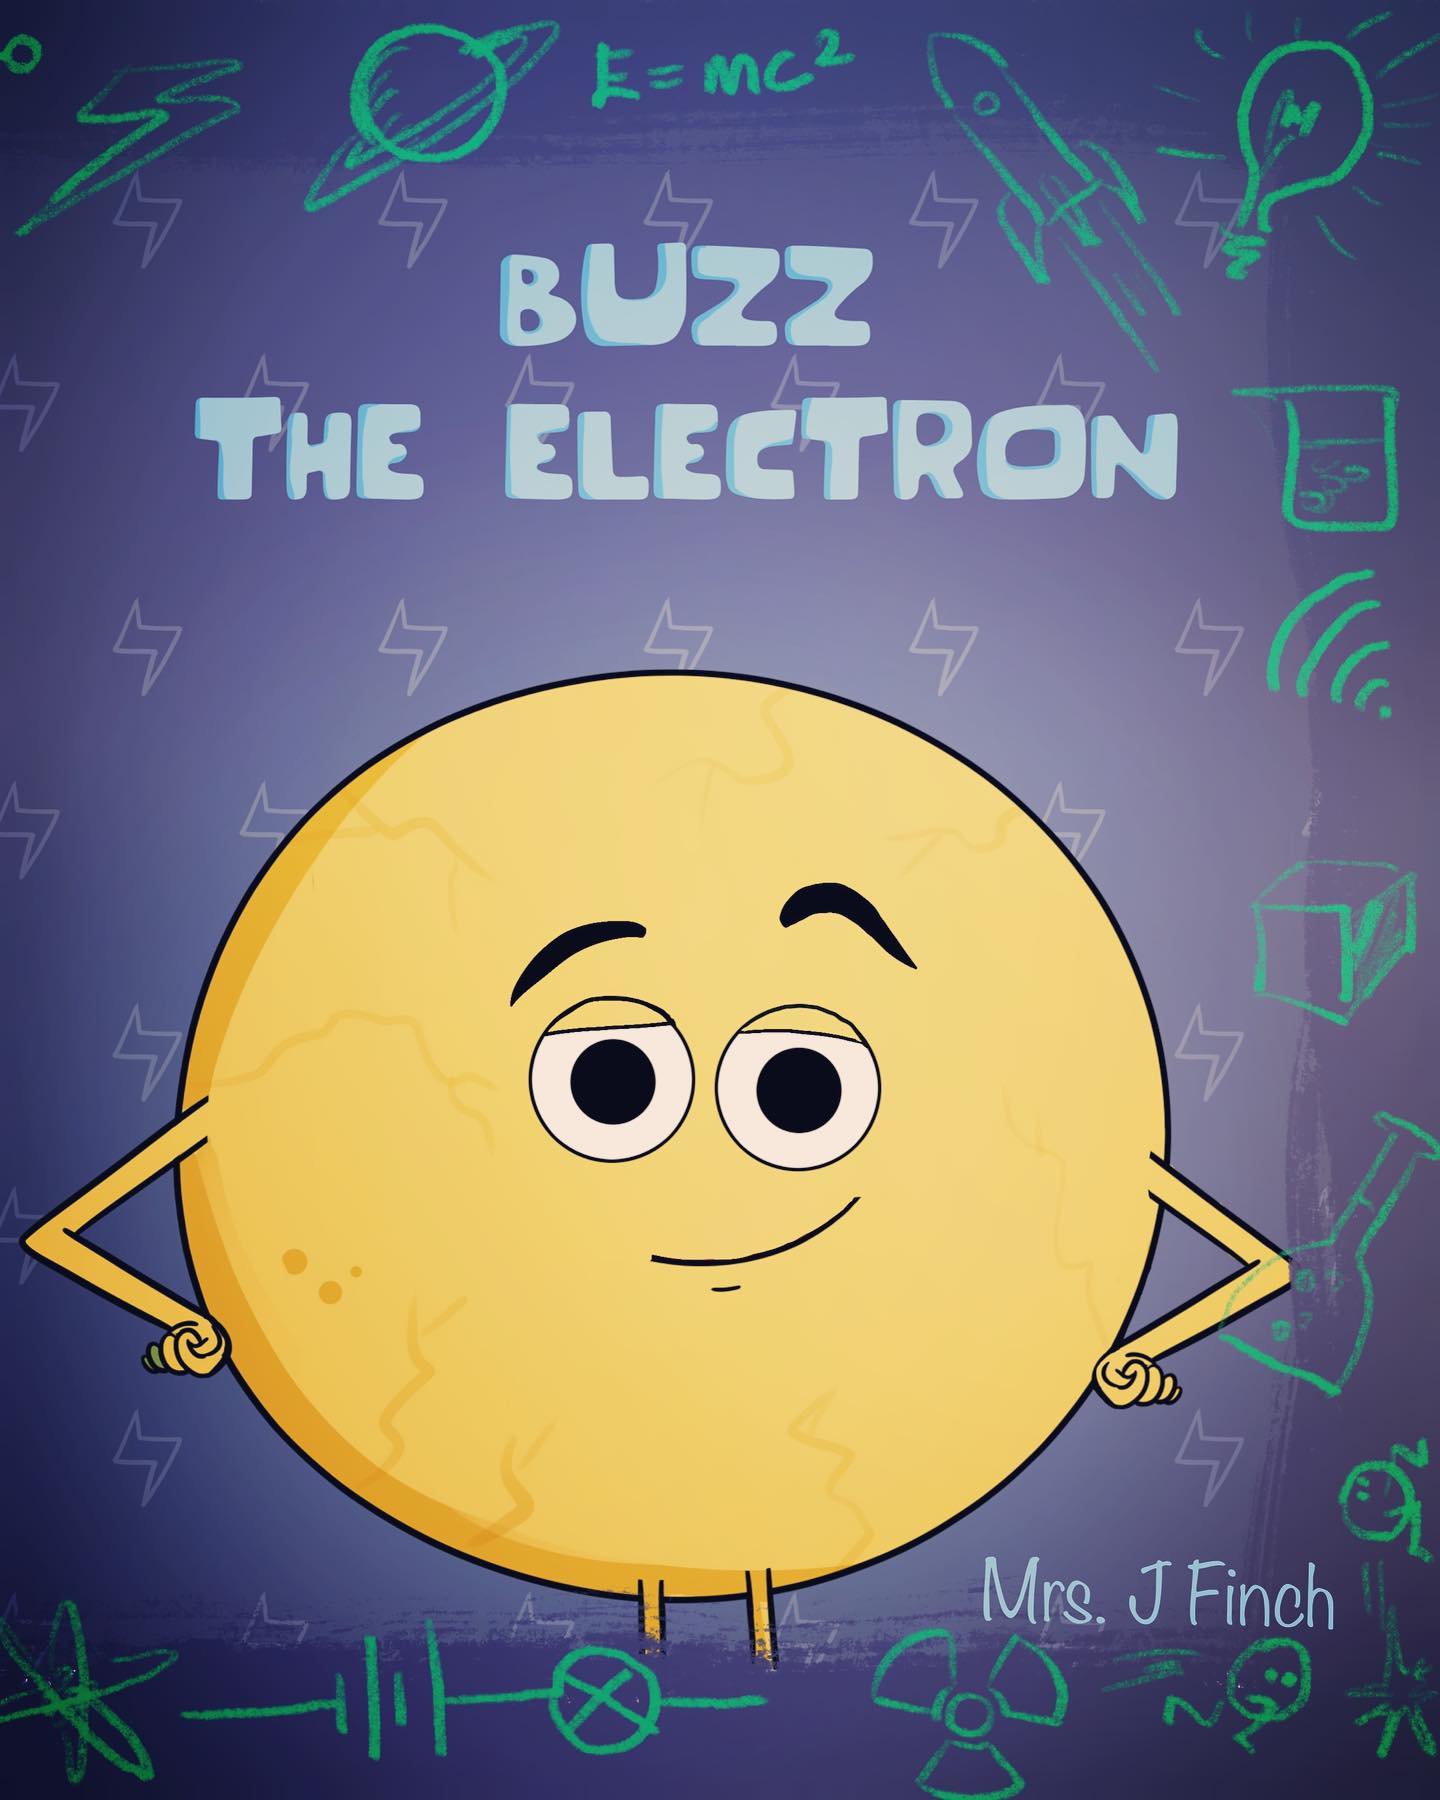 Buzz the Electron e-book cover. Photo: Joyana Finch, Buzz the Electron.